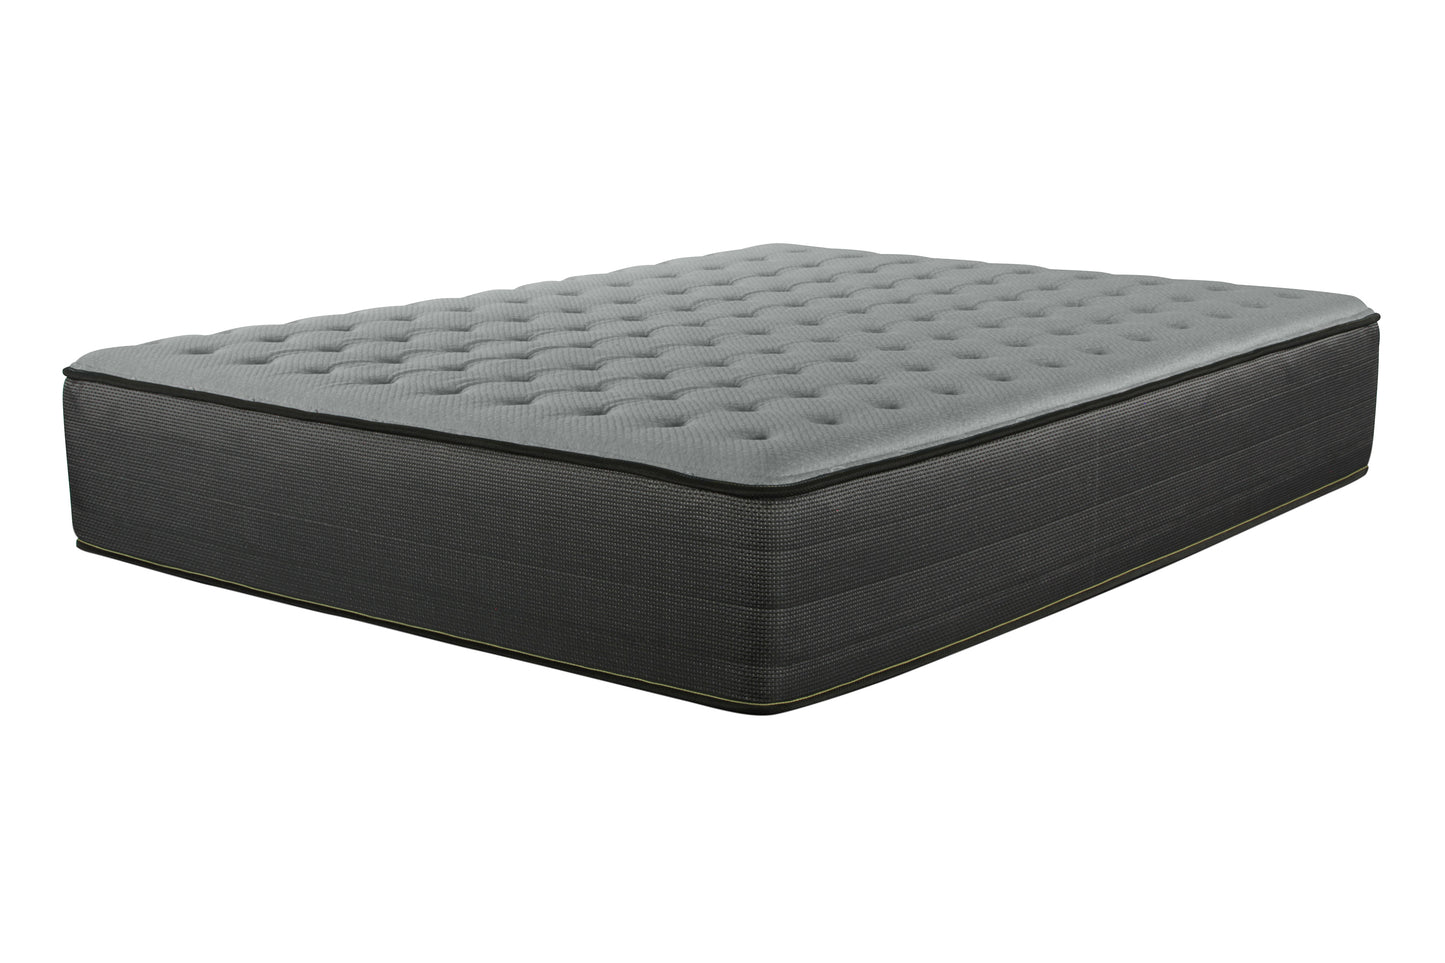 Perryton Firm 14" firm mattress